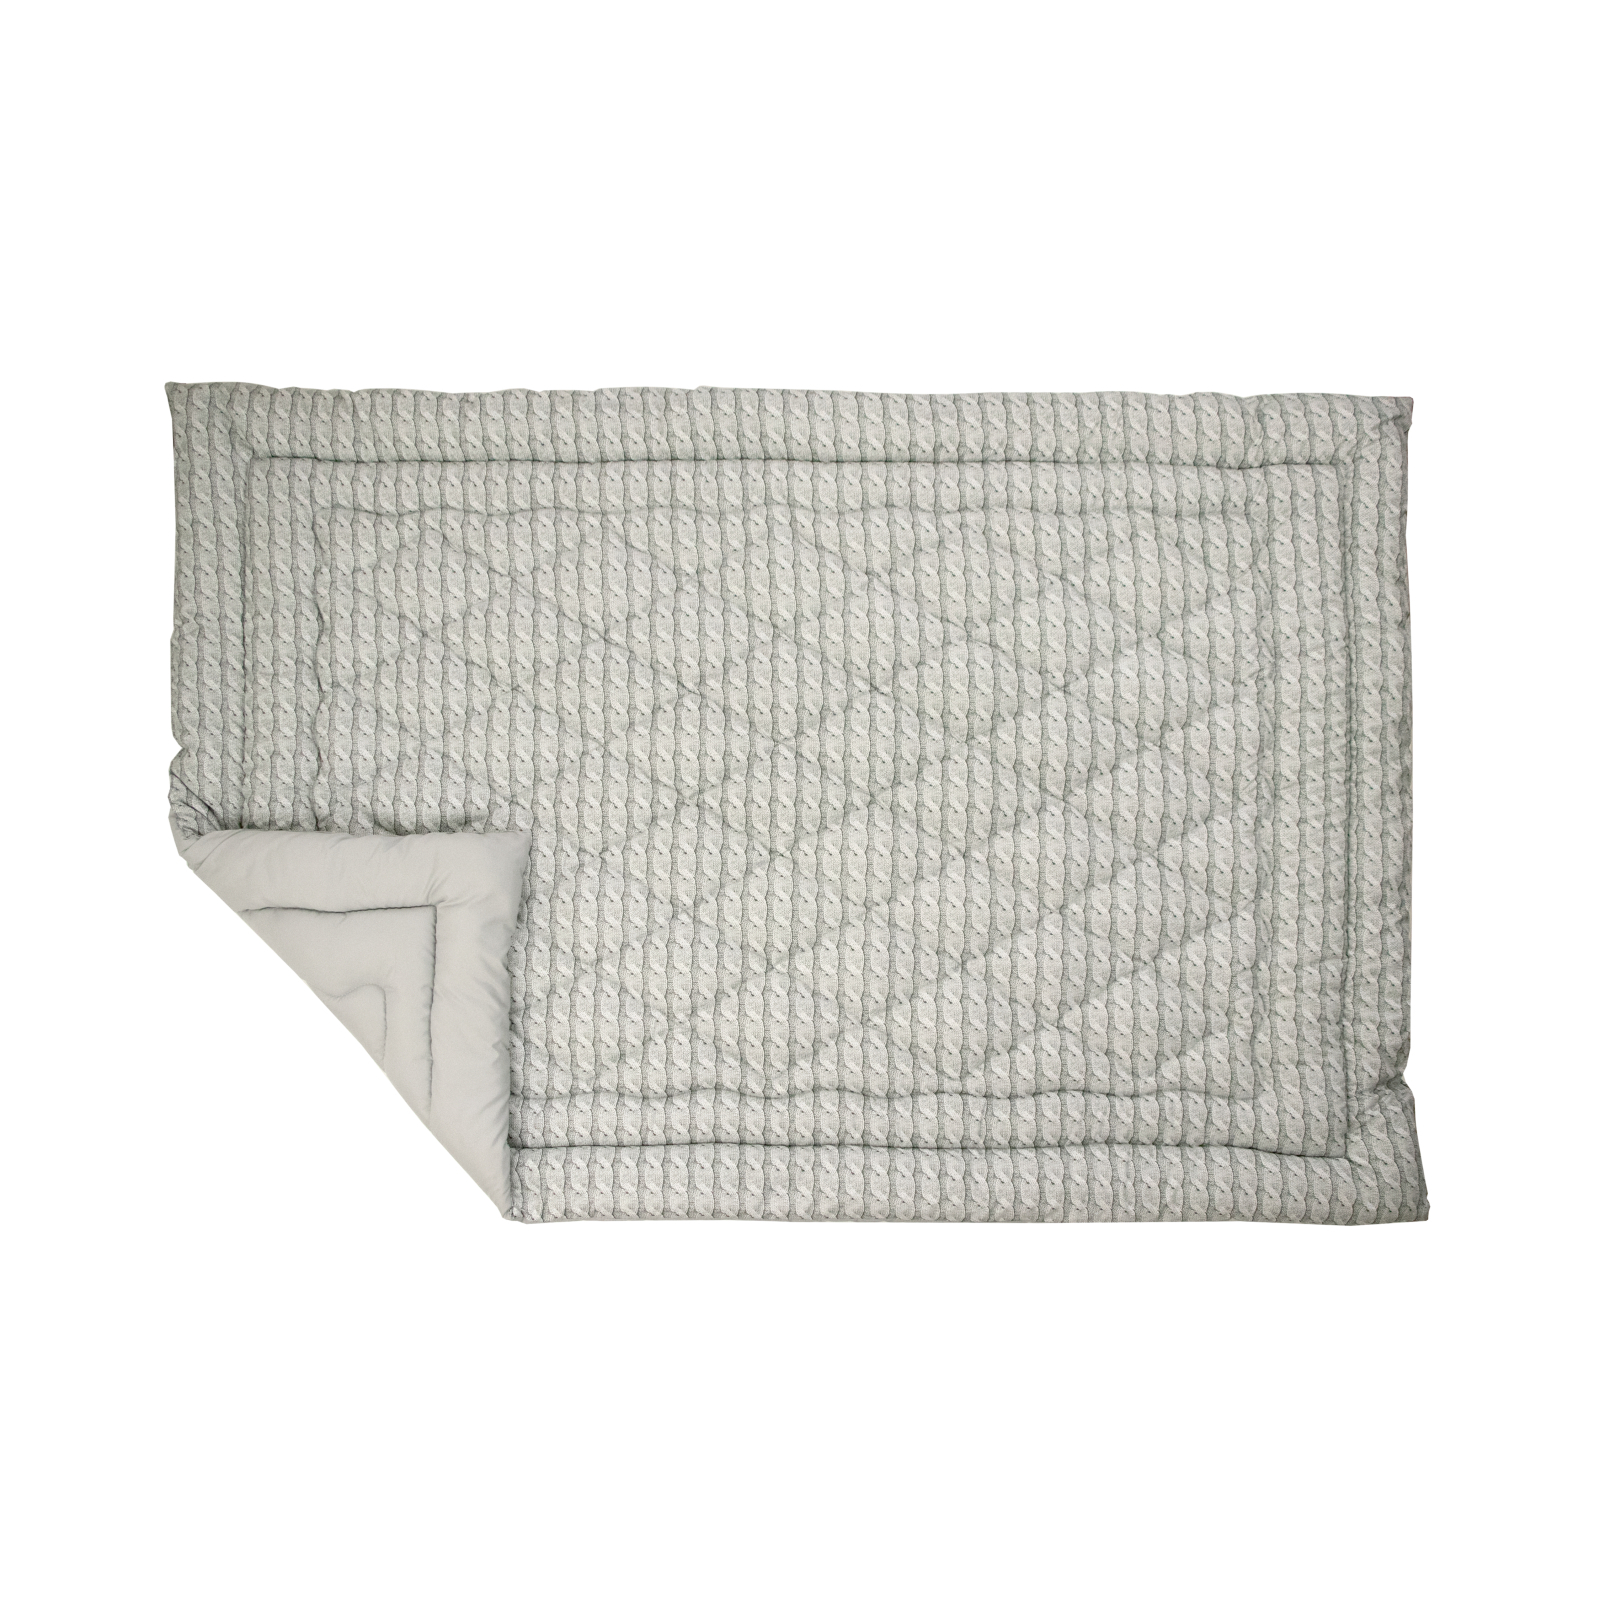 Одеяло Руно силиконовое Grey Braid зима 140х205 (Р321.52_Grey Braid) изображение 2